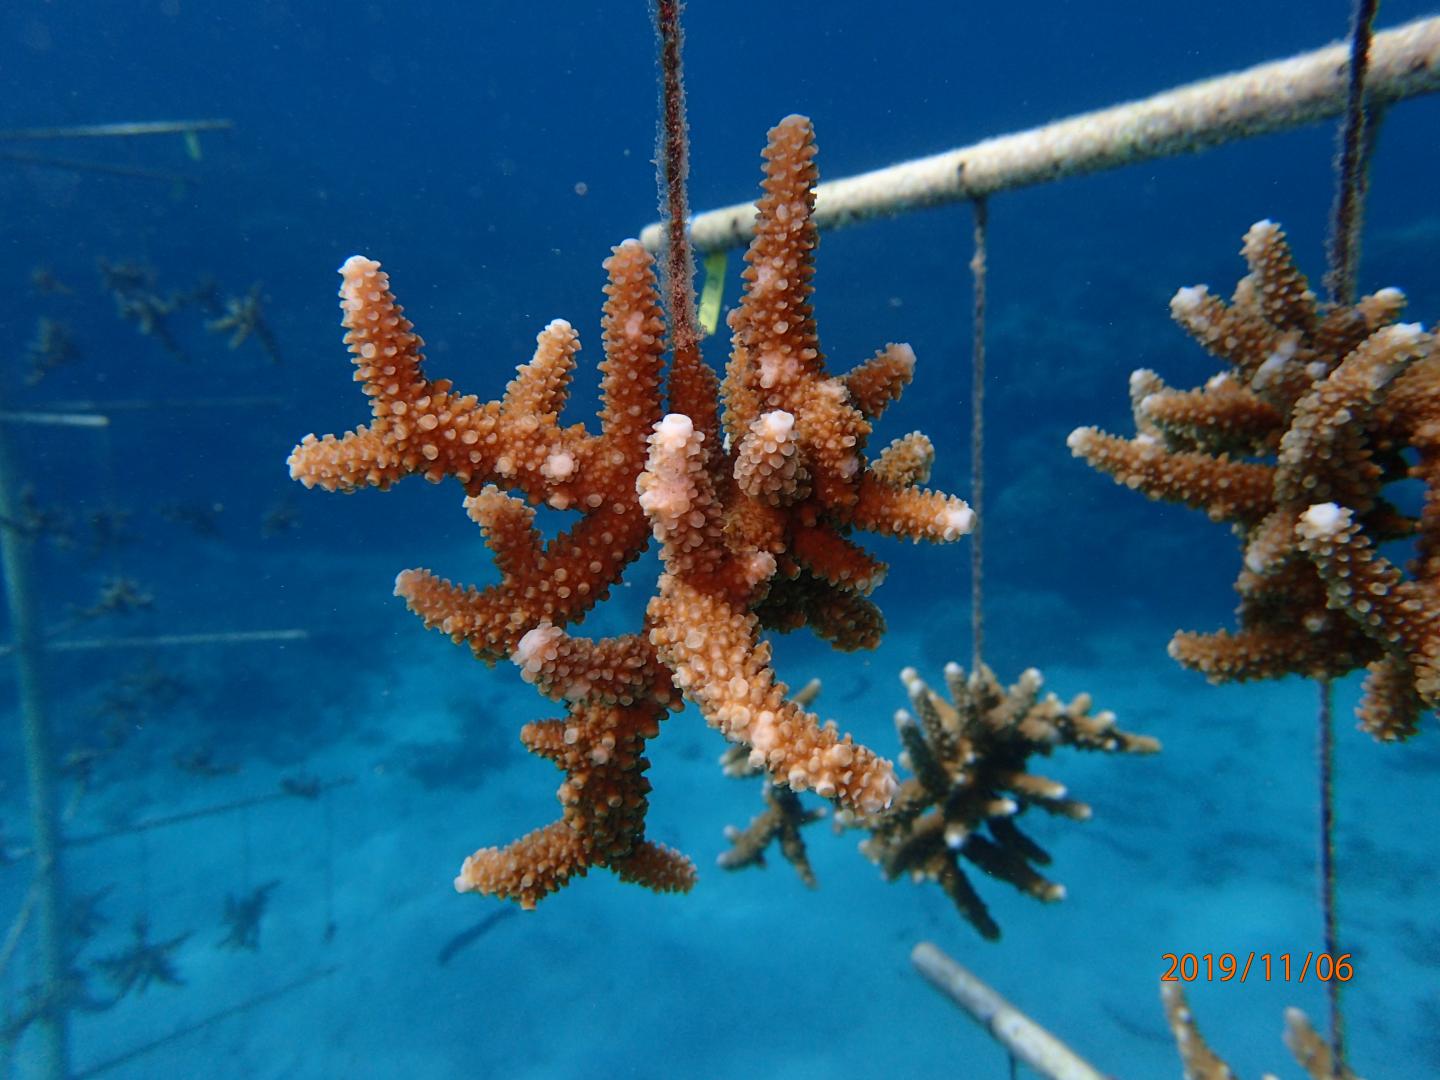 Acropora Pulchra in Coral Nursery in Guam